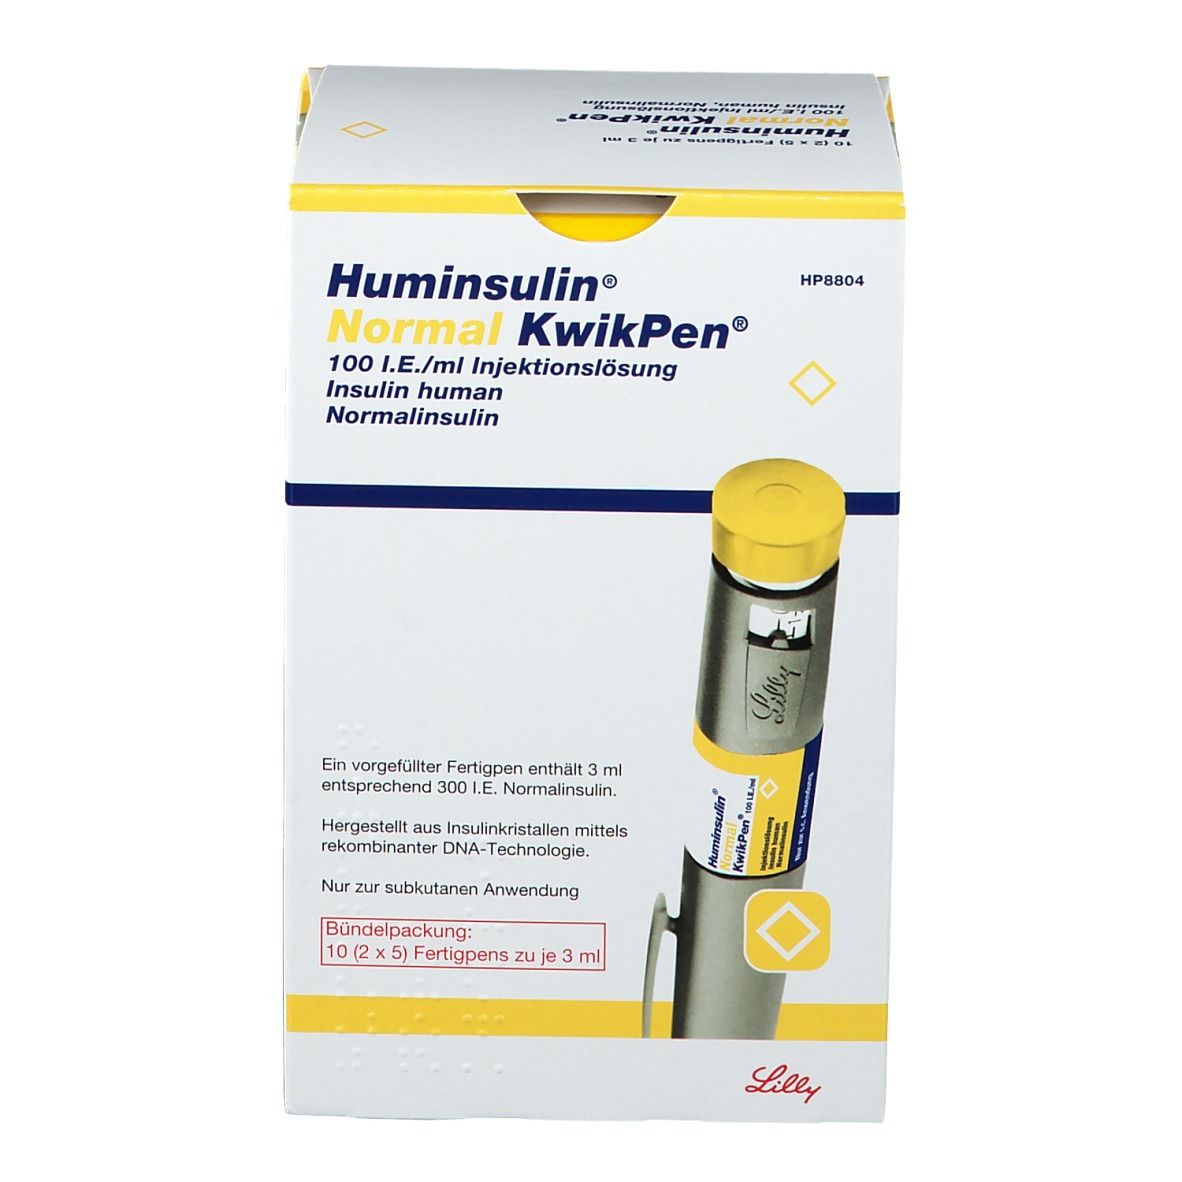 Huminsulin® Normal KwikPen™